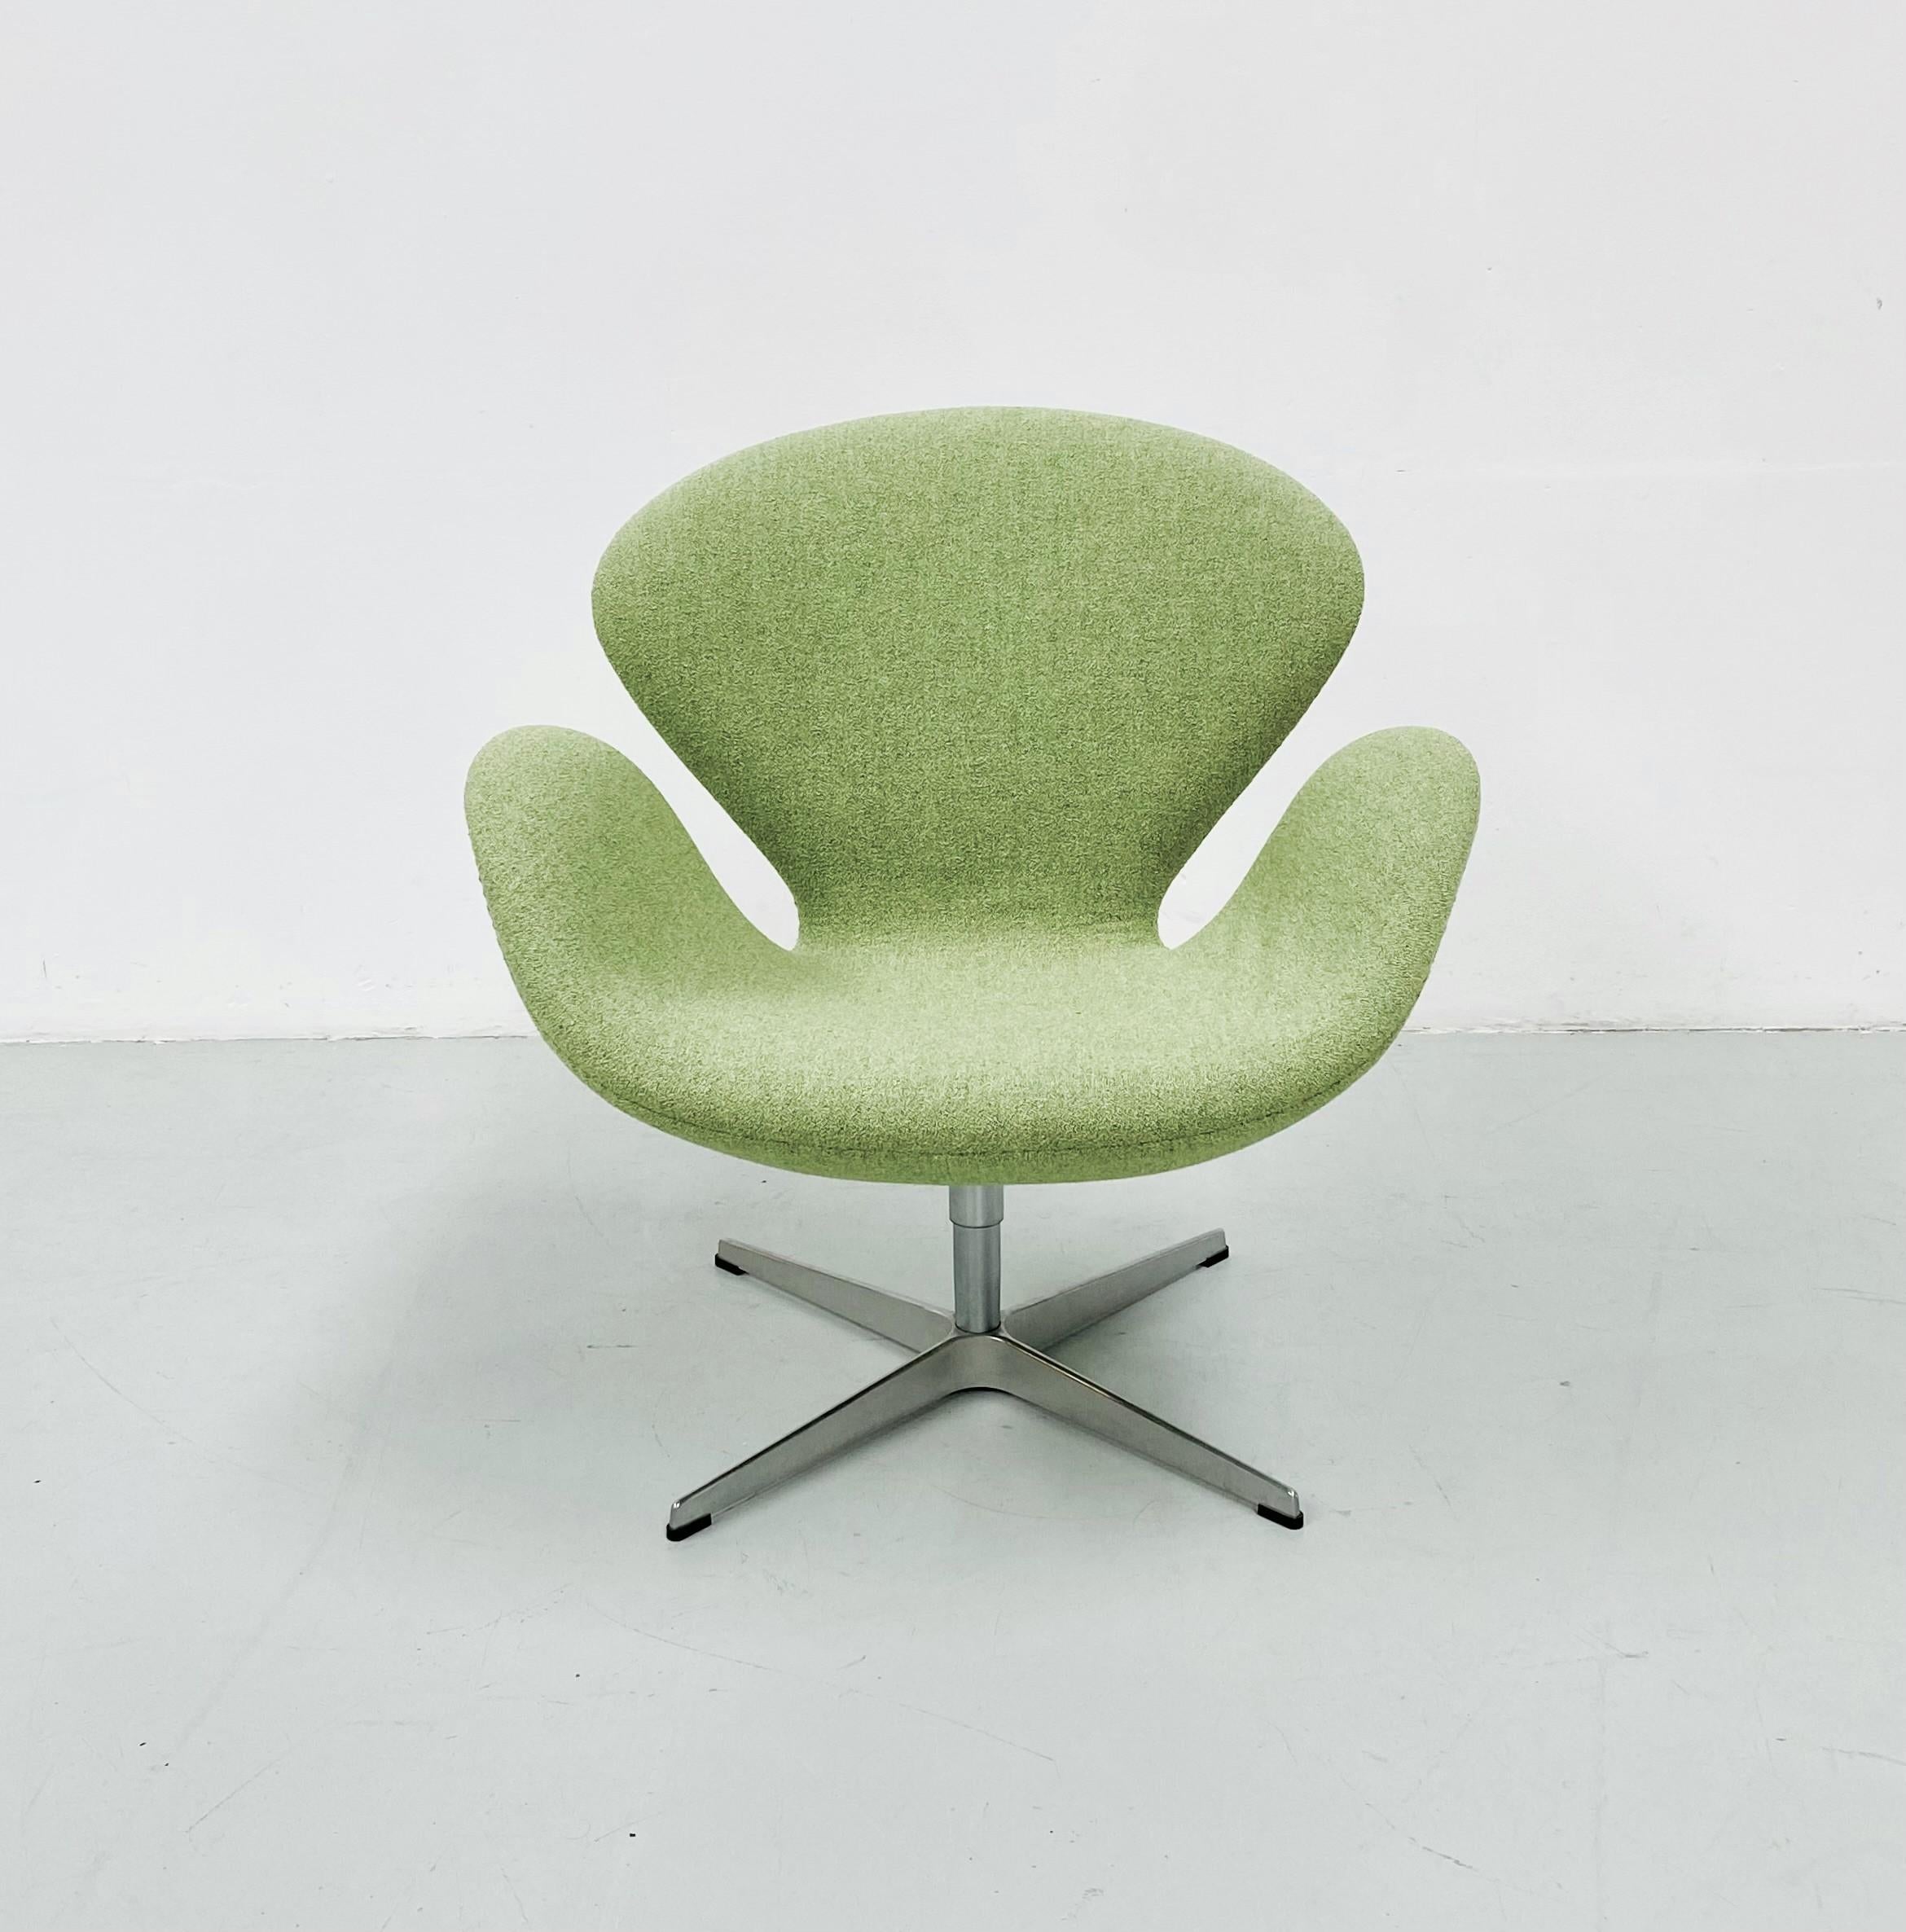 Dieser Schwan-Stuhl wurde 1958 von Arne Jacobsen für die Lobby und den Lounge-Bereich des SAS Royal Hotels in Kopenhagen entworfen. Das Design enthält keine geraden Linien, wodurch es trotz seiner Einfachheit und starken architektonischen